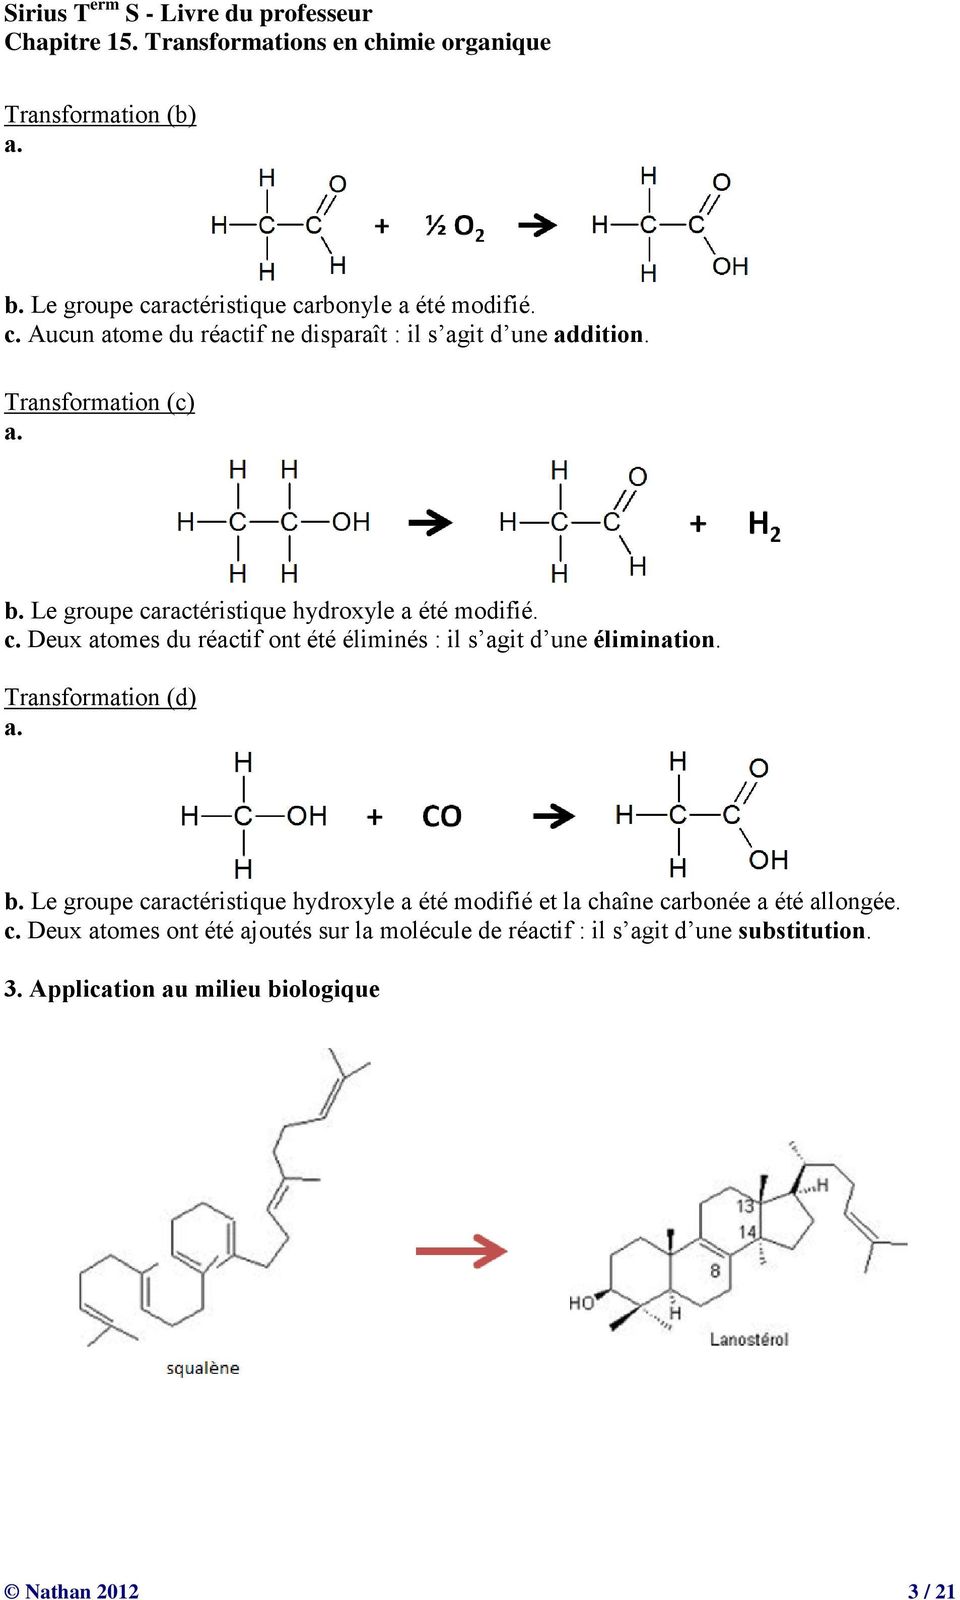 Transformation (d) a. b. Le groupe caractéristique hydroxyle a été modifié et la chaîne carbonée a été allongée. c. Deux atomes ont été ajoutés sur la molécule de réactif : il s agit d une substitution.